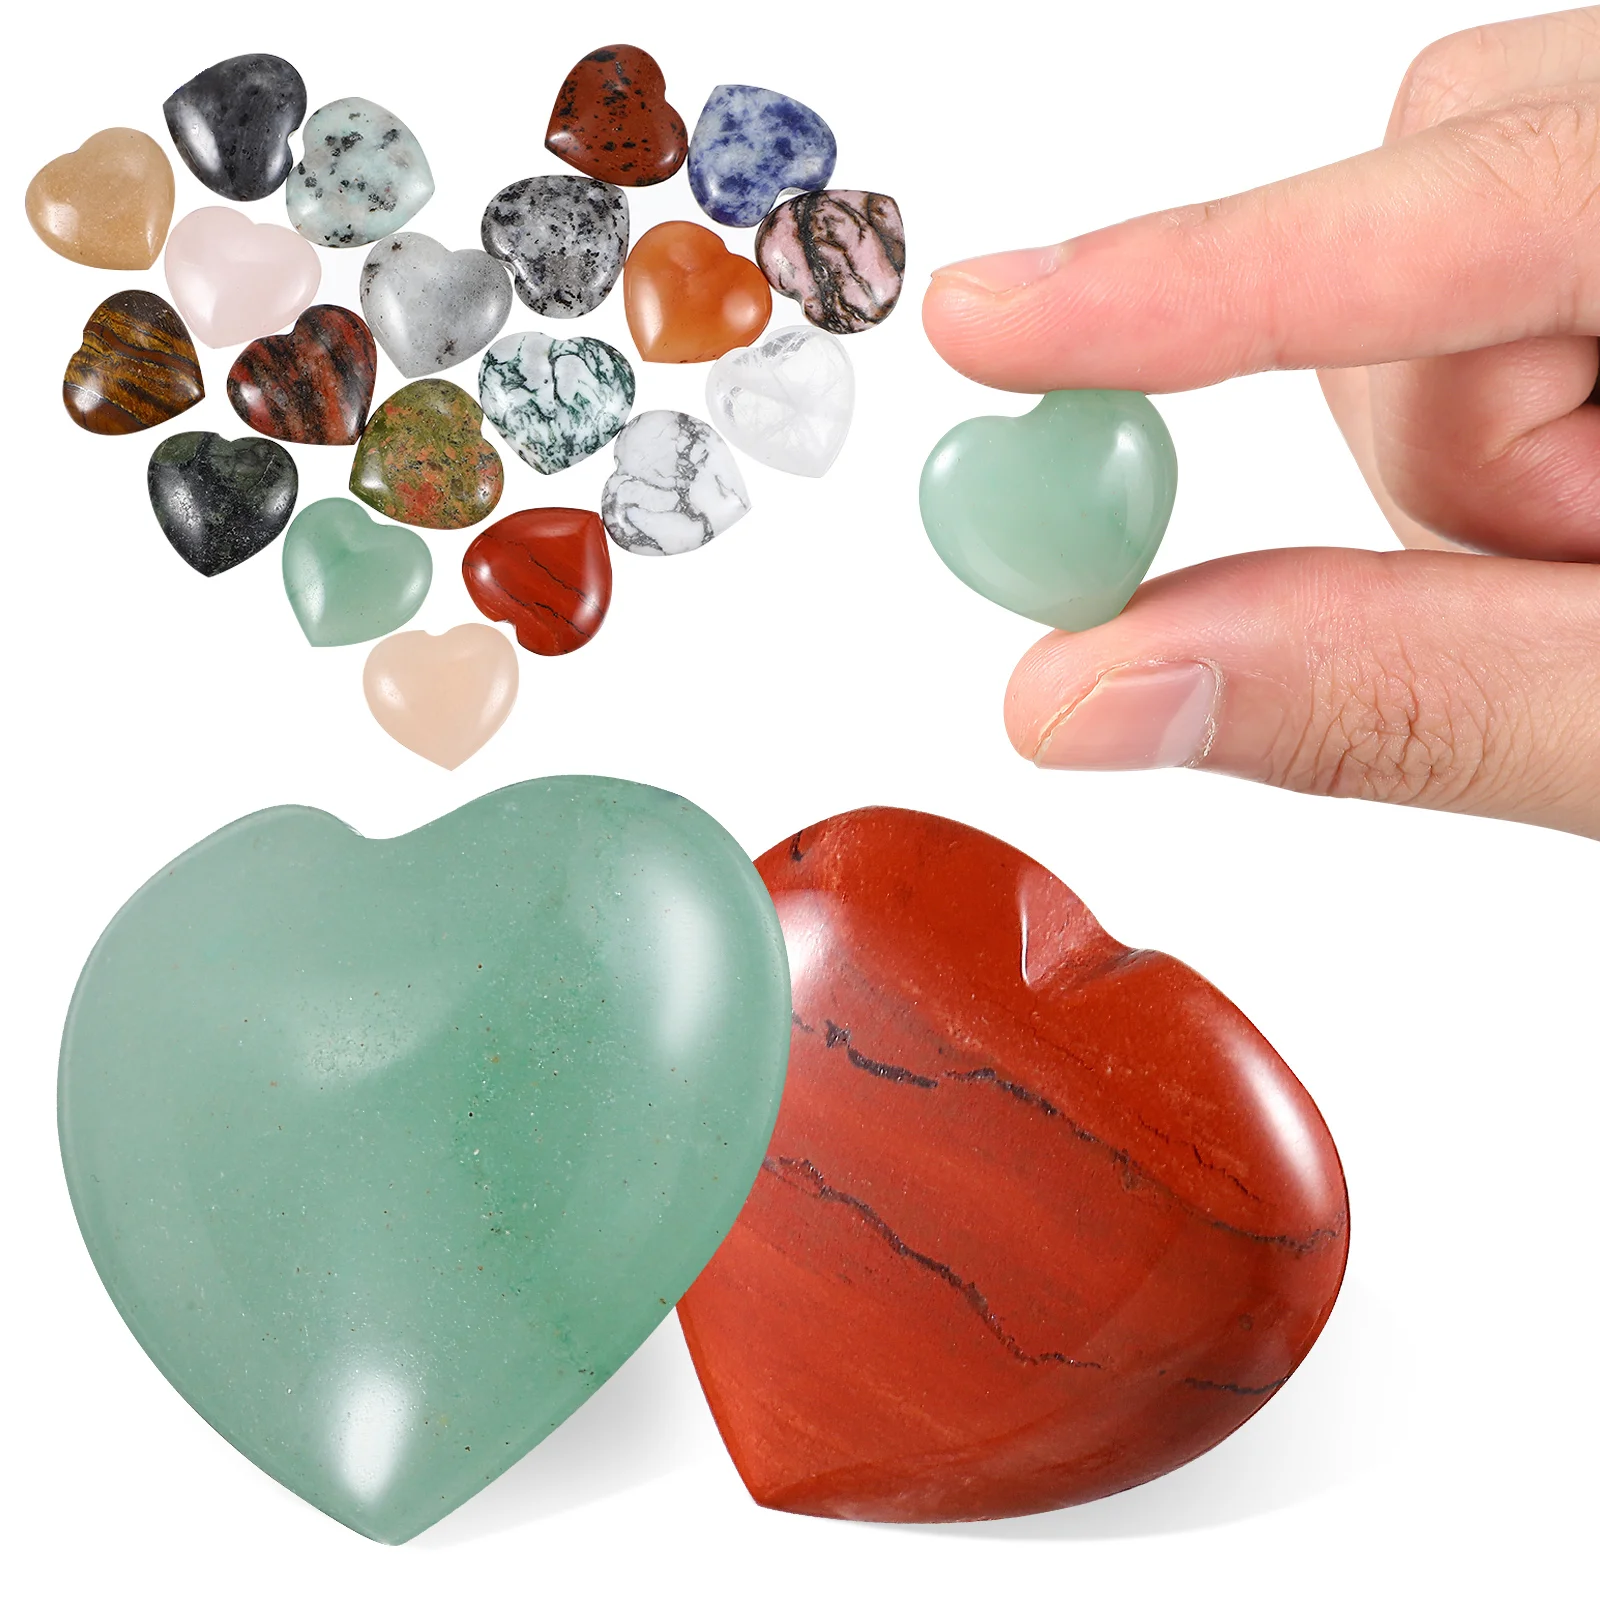 

Heart Stones Crystals Crystal Gemstones Love Shaped Quartz Stone Filler Vase Scatter Table Pocket Worry Gift Carved Meditation